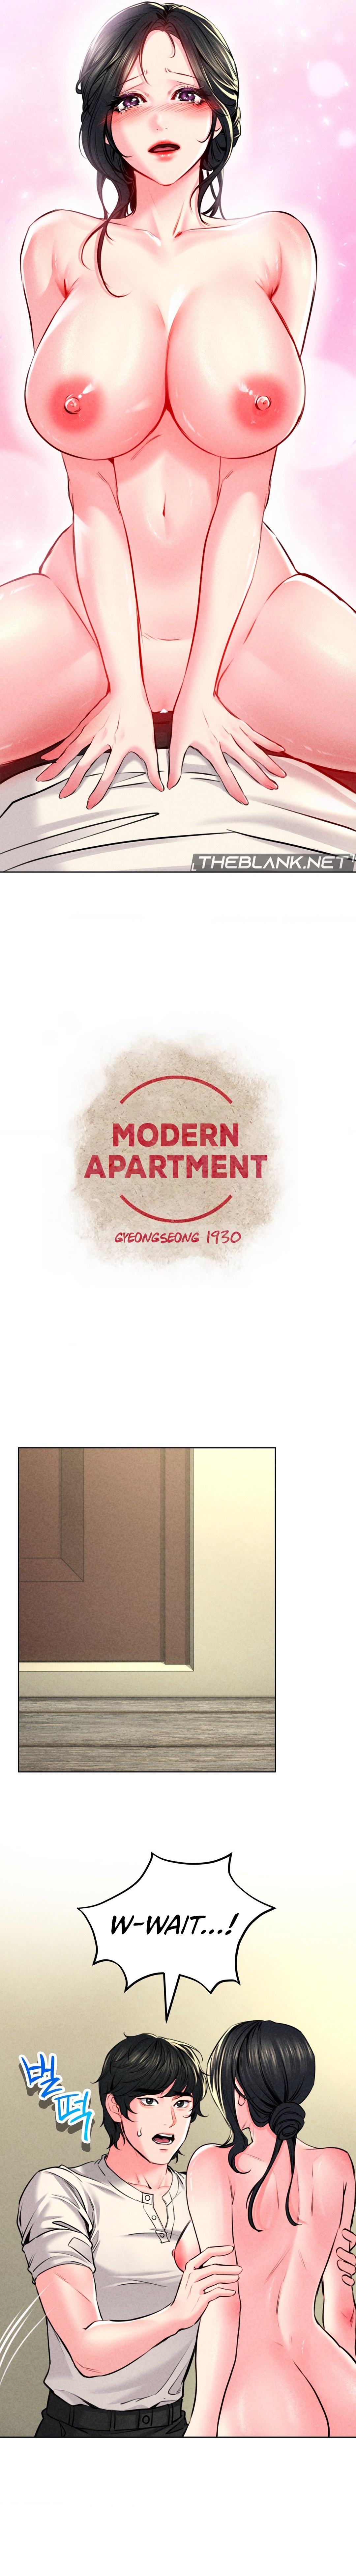 Read manhwa Modern Apartment, Gyeongseong 1930 Chapter 13 - SauceManhwa.com